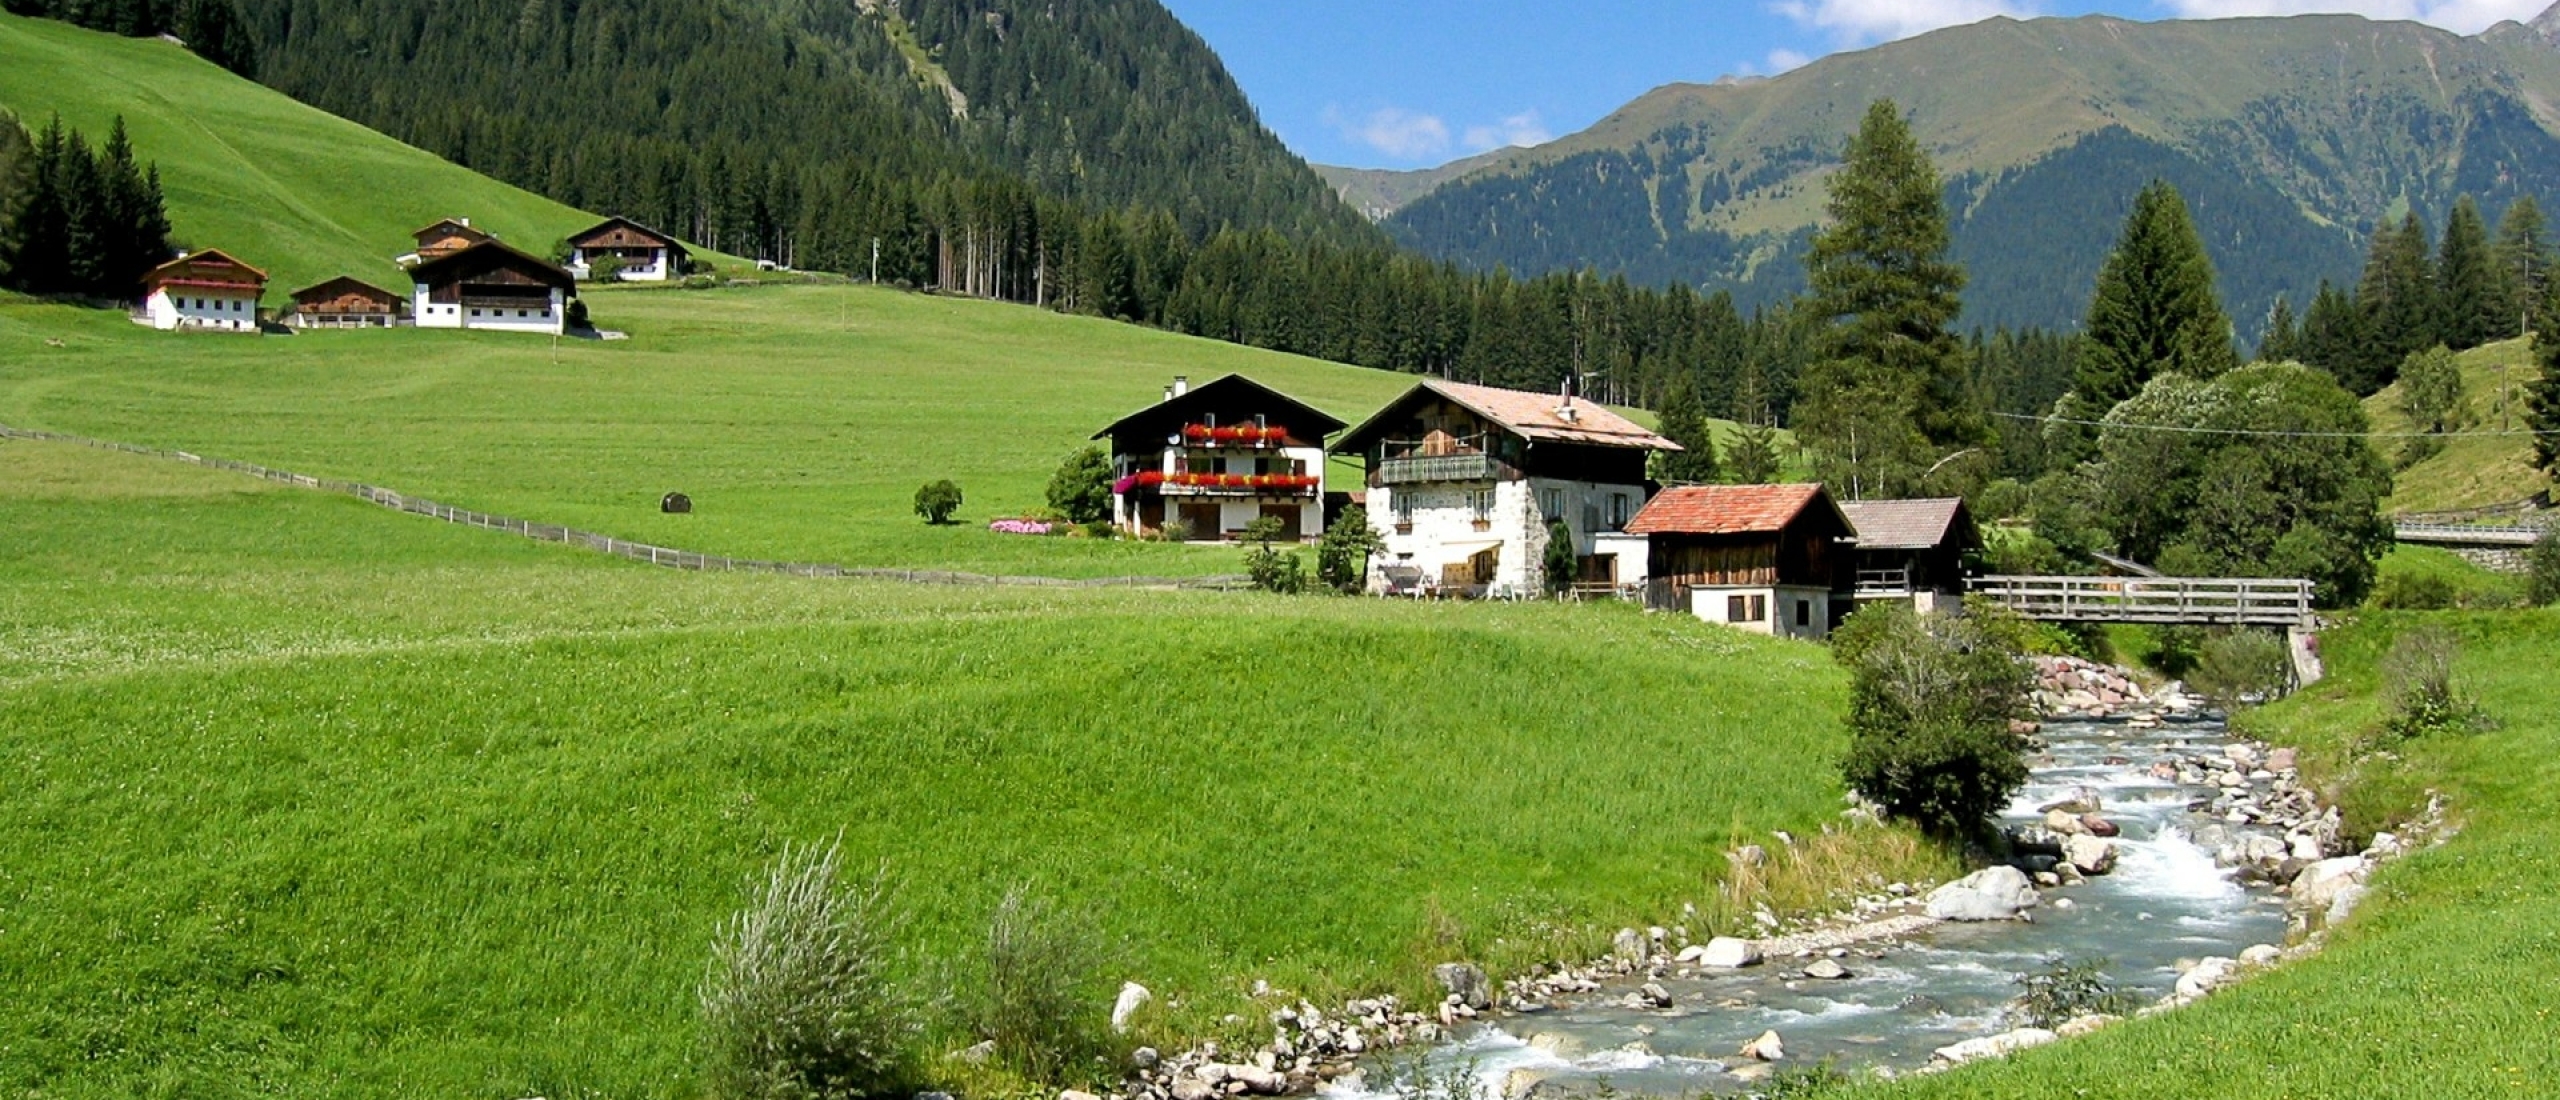 Vakantiehuis in Zuid-Tirol? Ga slapen op de boerderij!